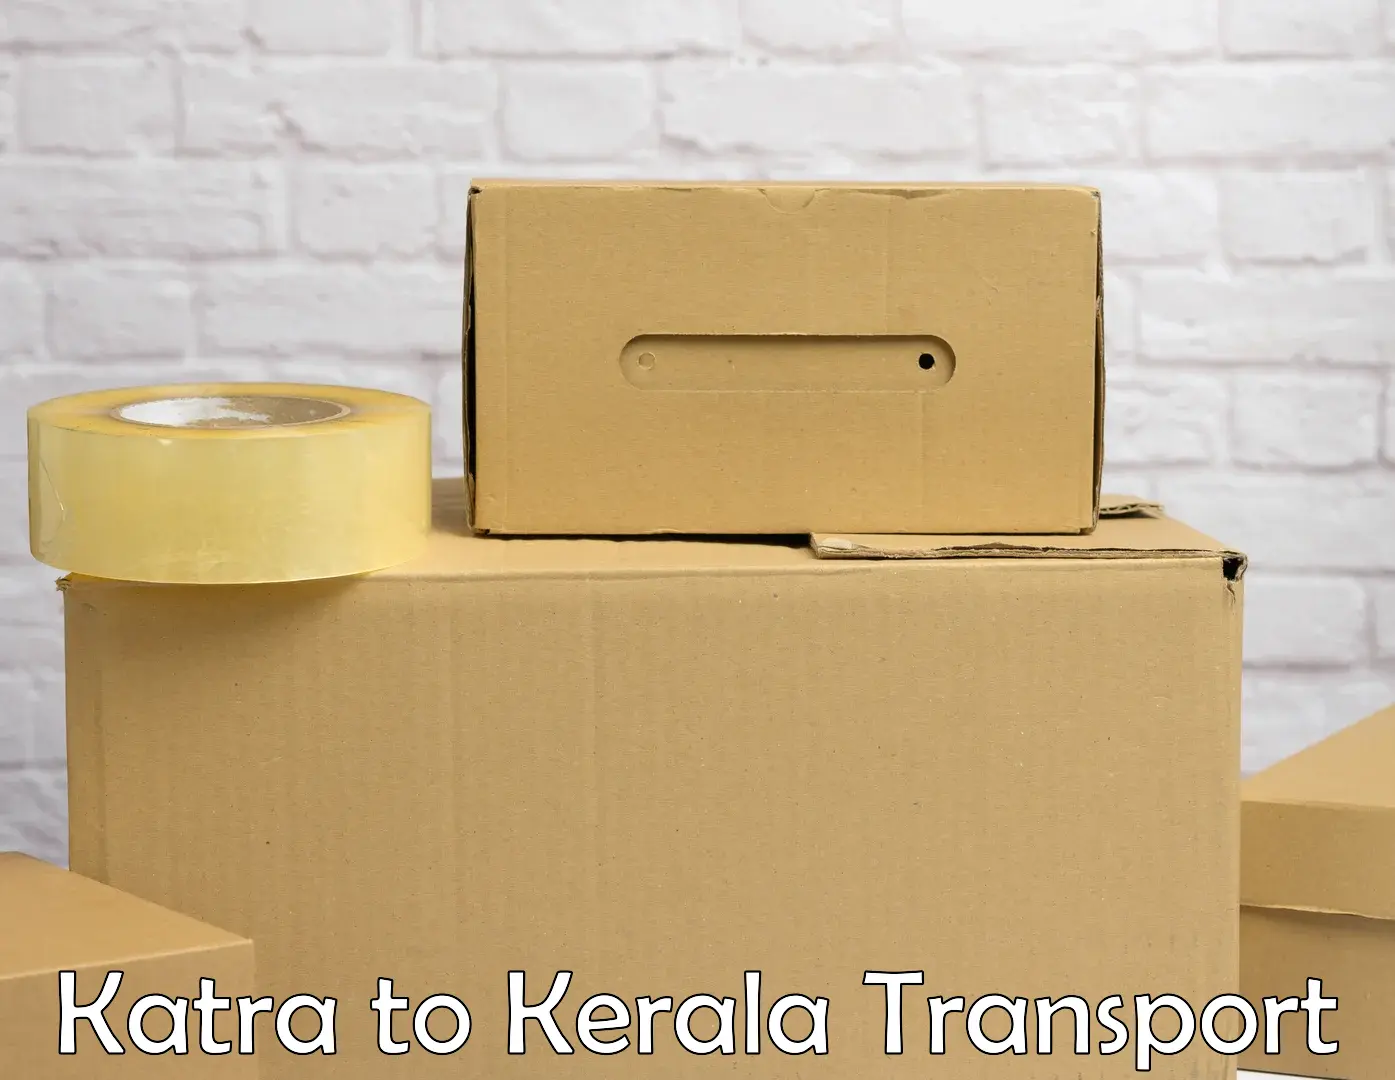 All India transport service Katra to Kerala